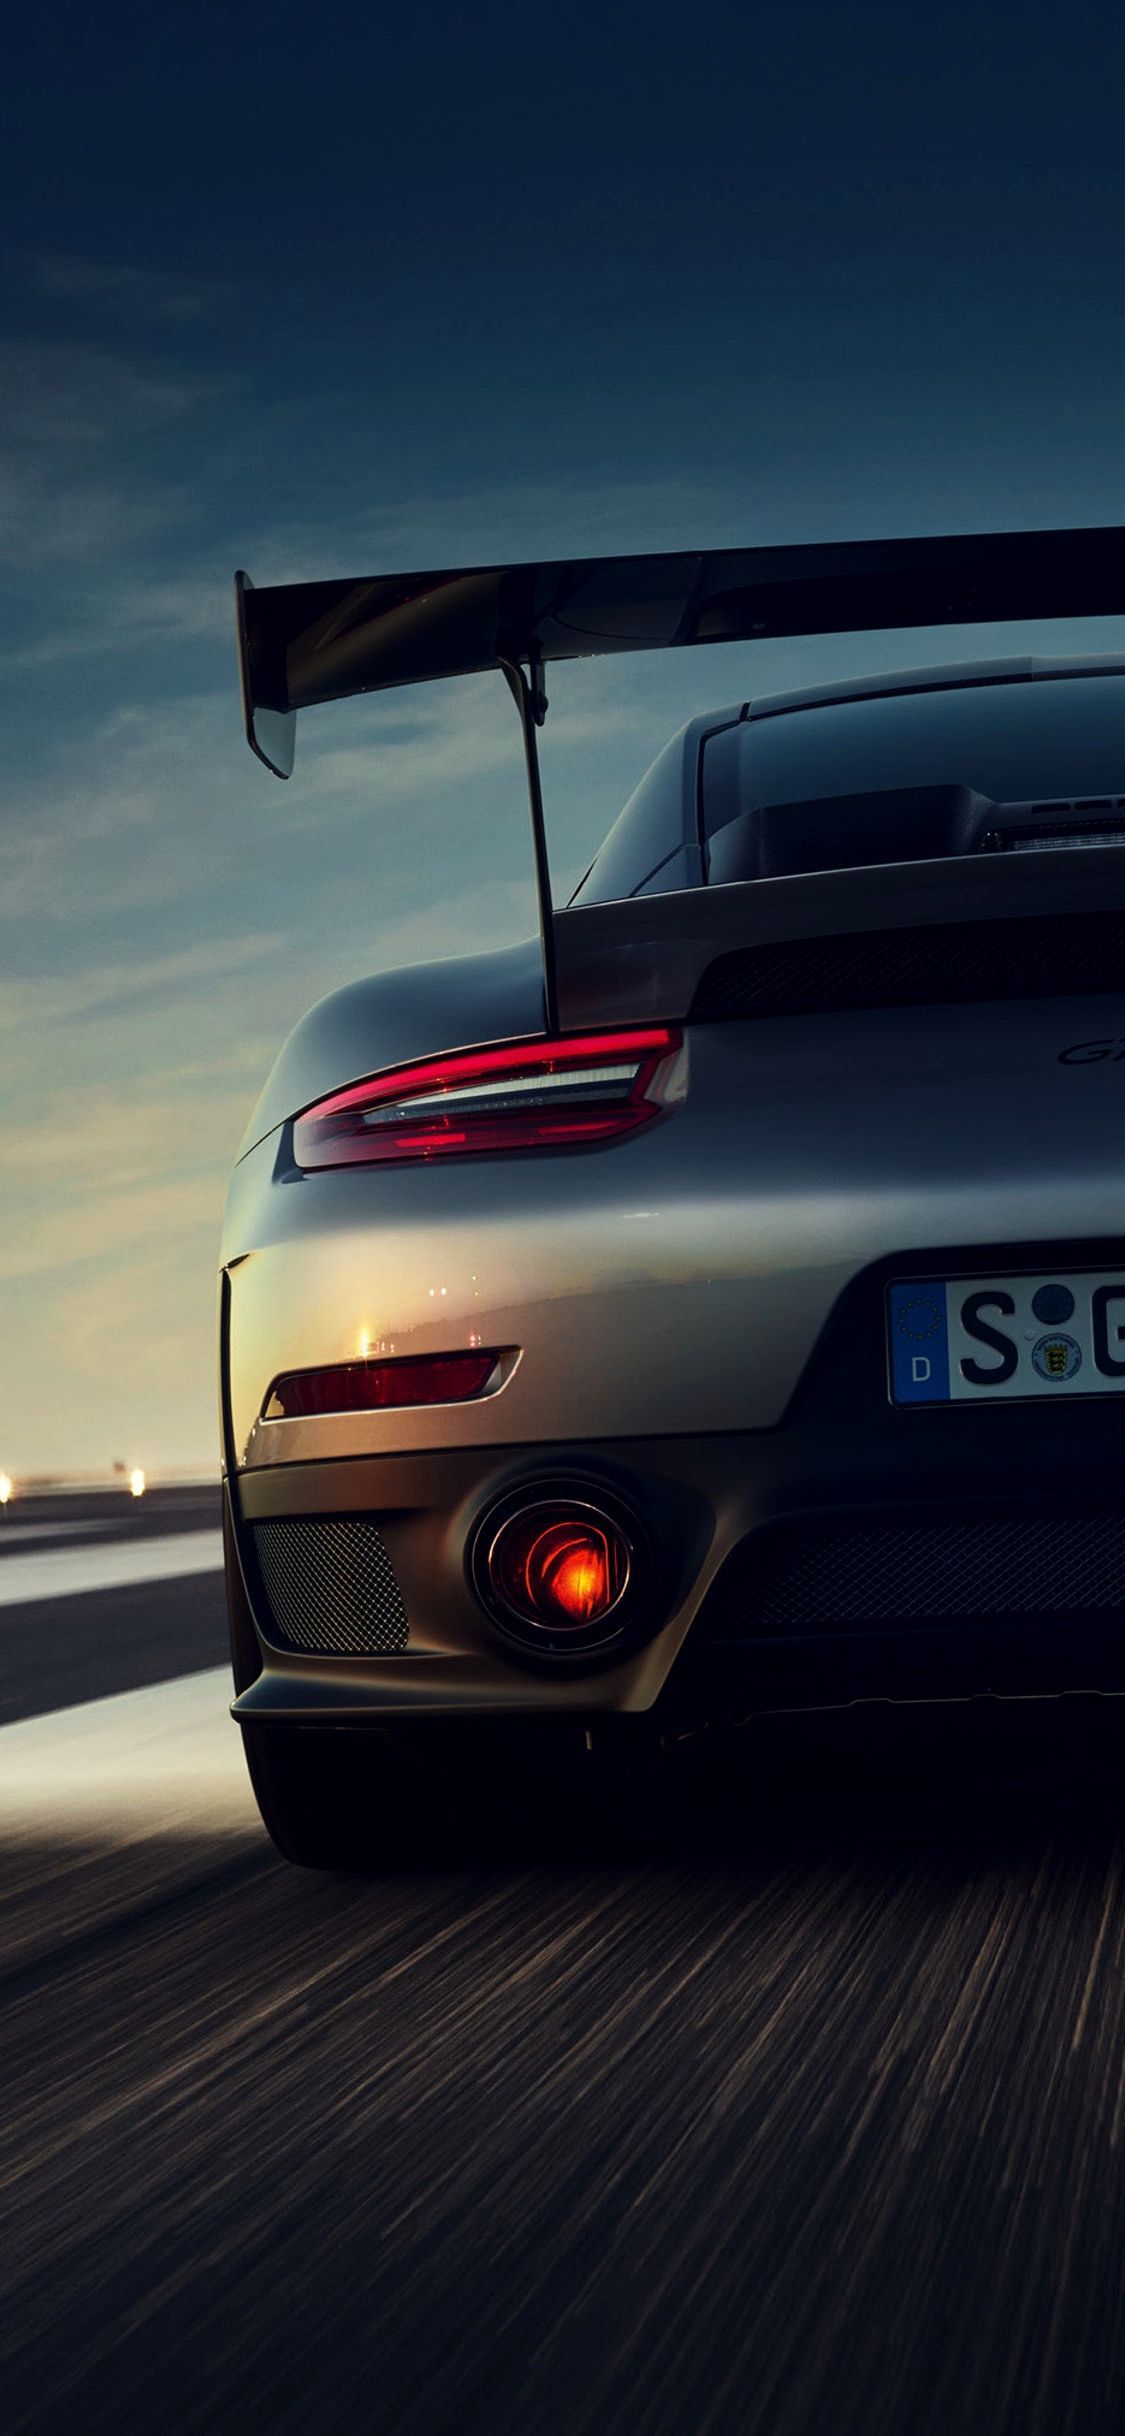 Porsche Wallpaper 4K iPhone Gallery. Carros de luxo, Carros